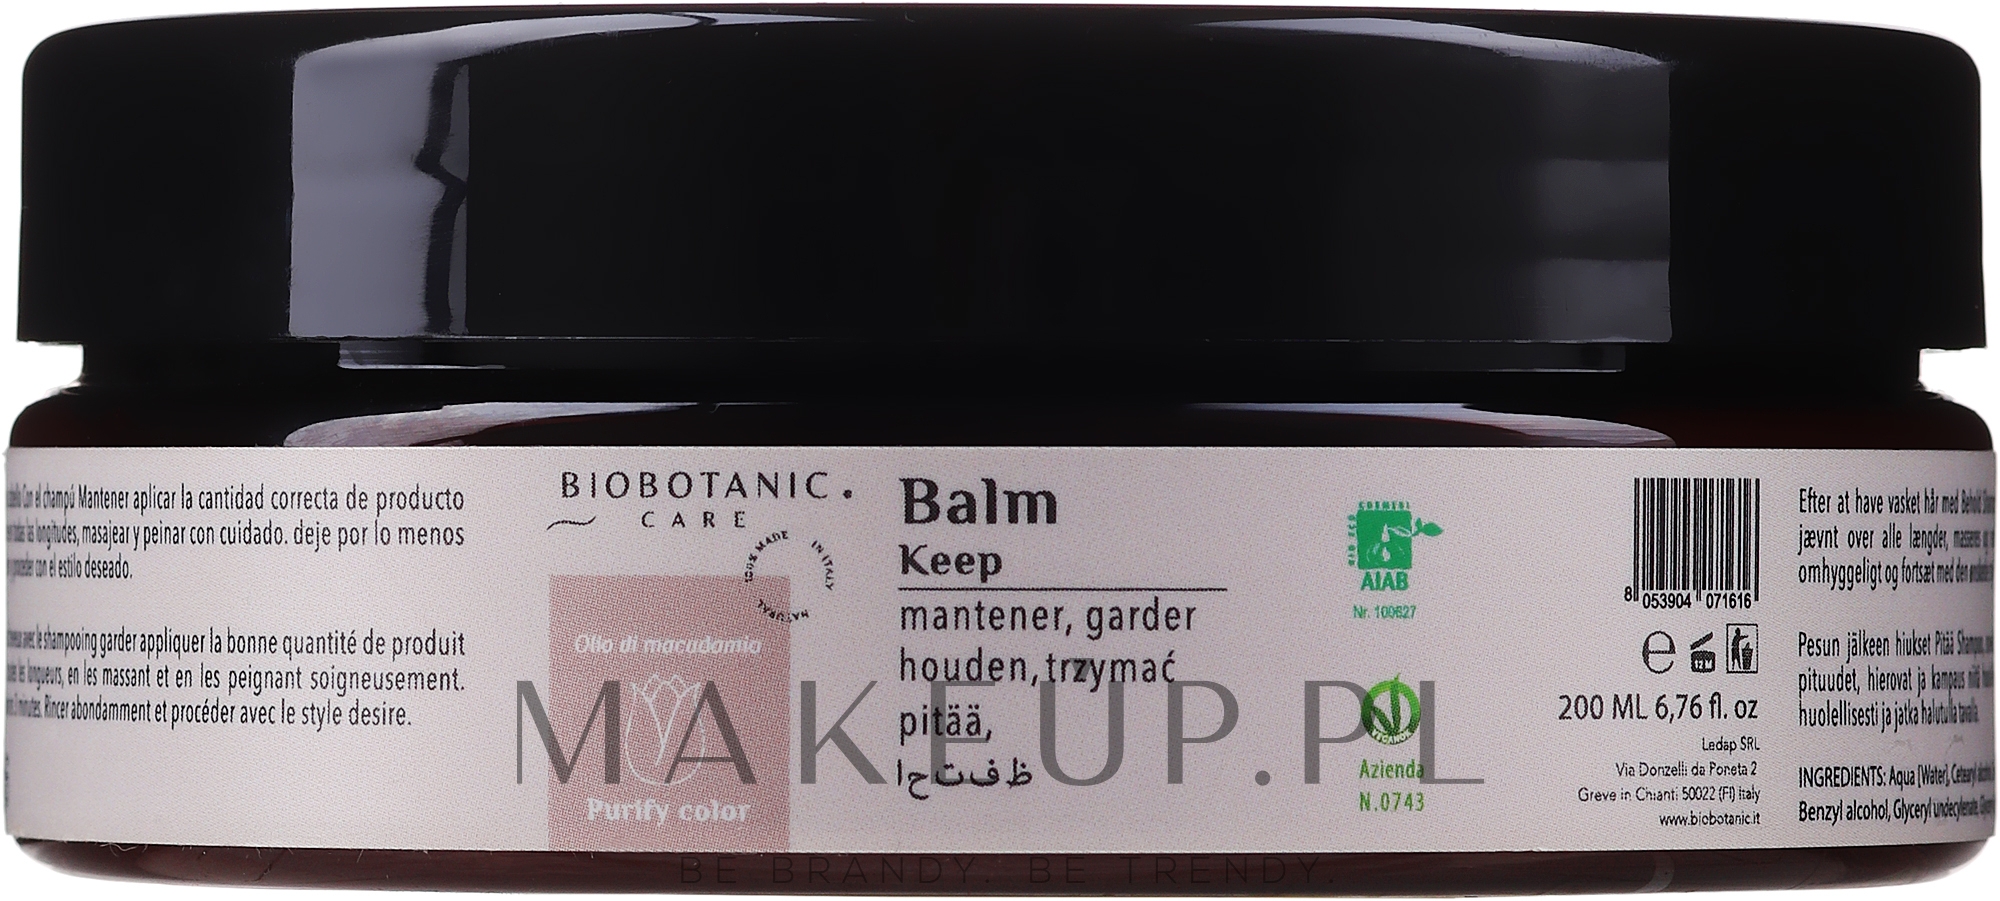 Balsam-maska do włosów farbowanych - BioBotanic Purify Color Keep Balm — Zdjęcie 200 ml